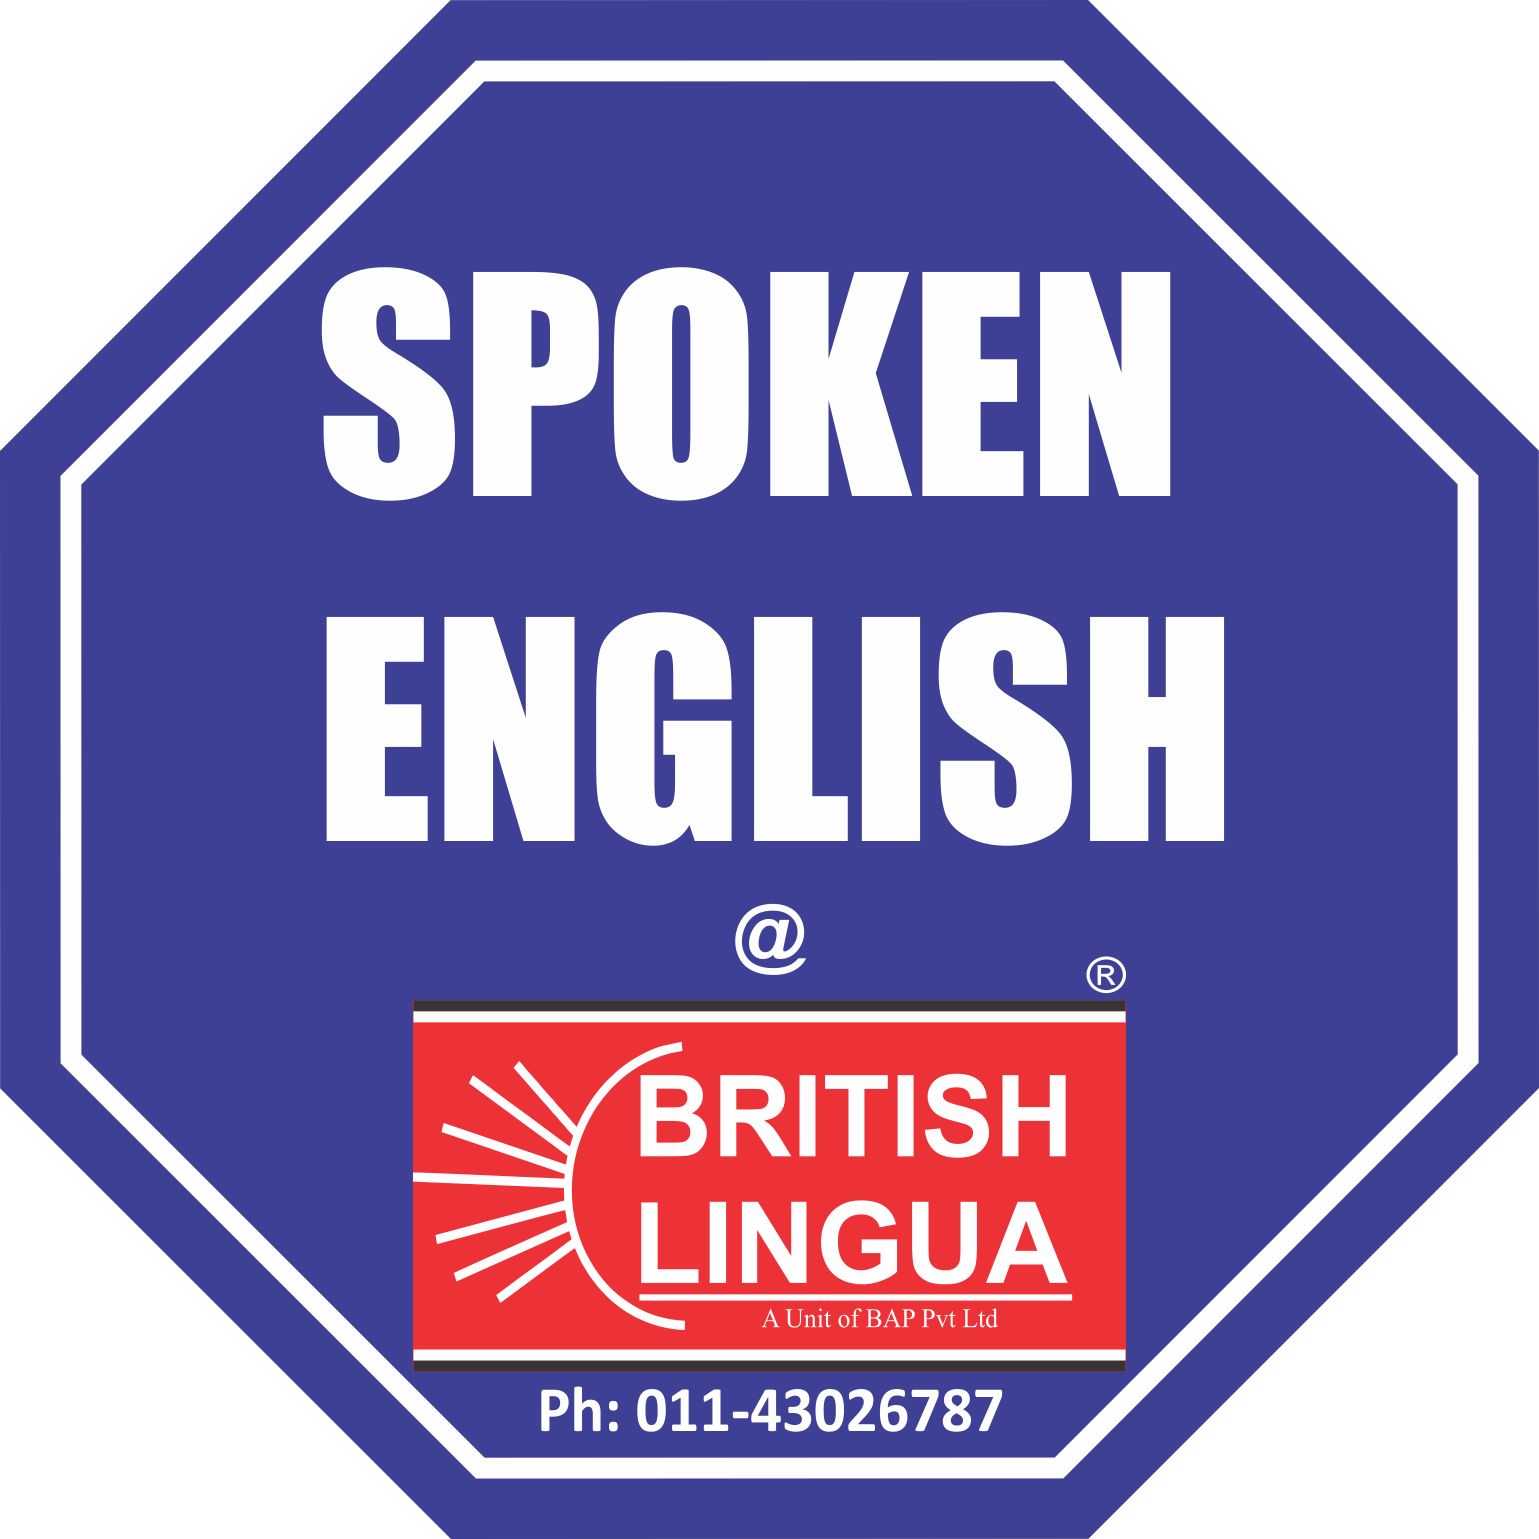 English spoken here. Spoken English. Spoken English classes. Speak English. Spoken English books.